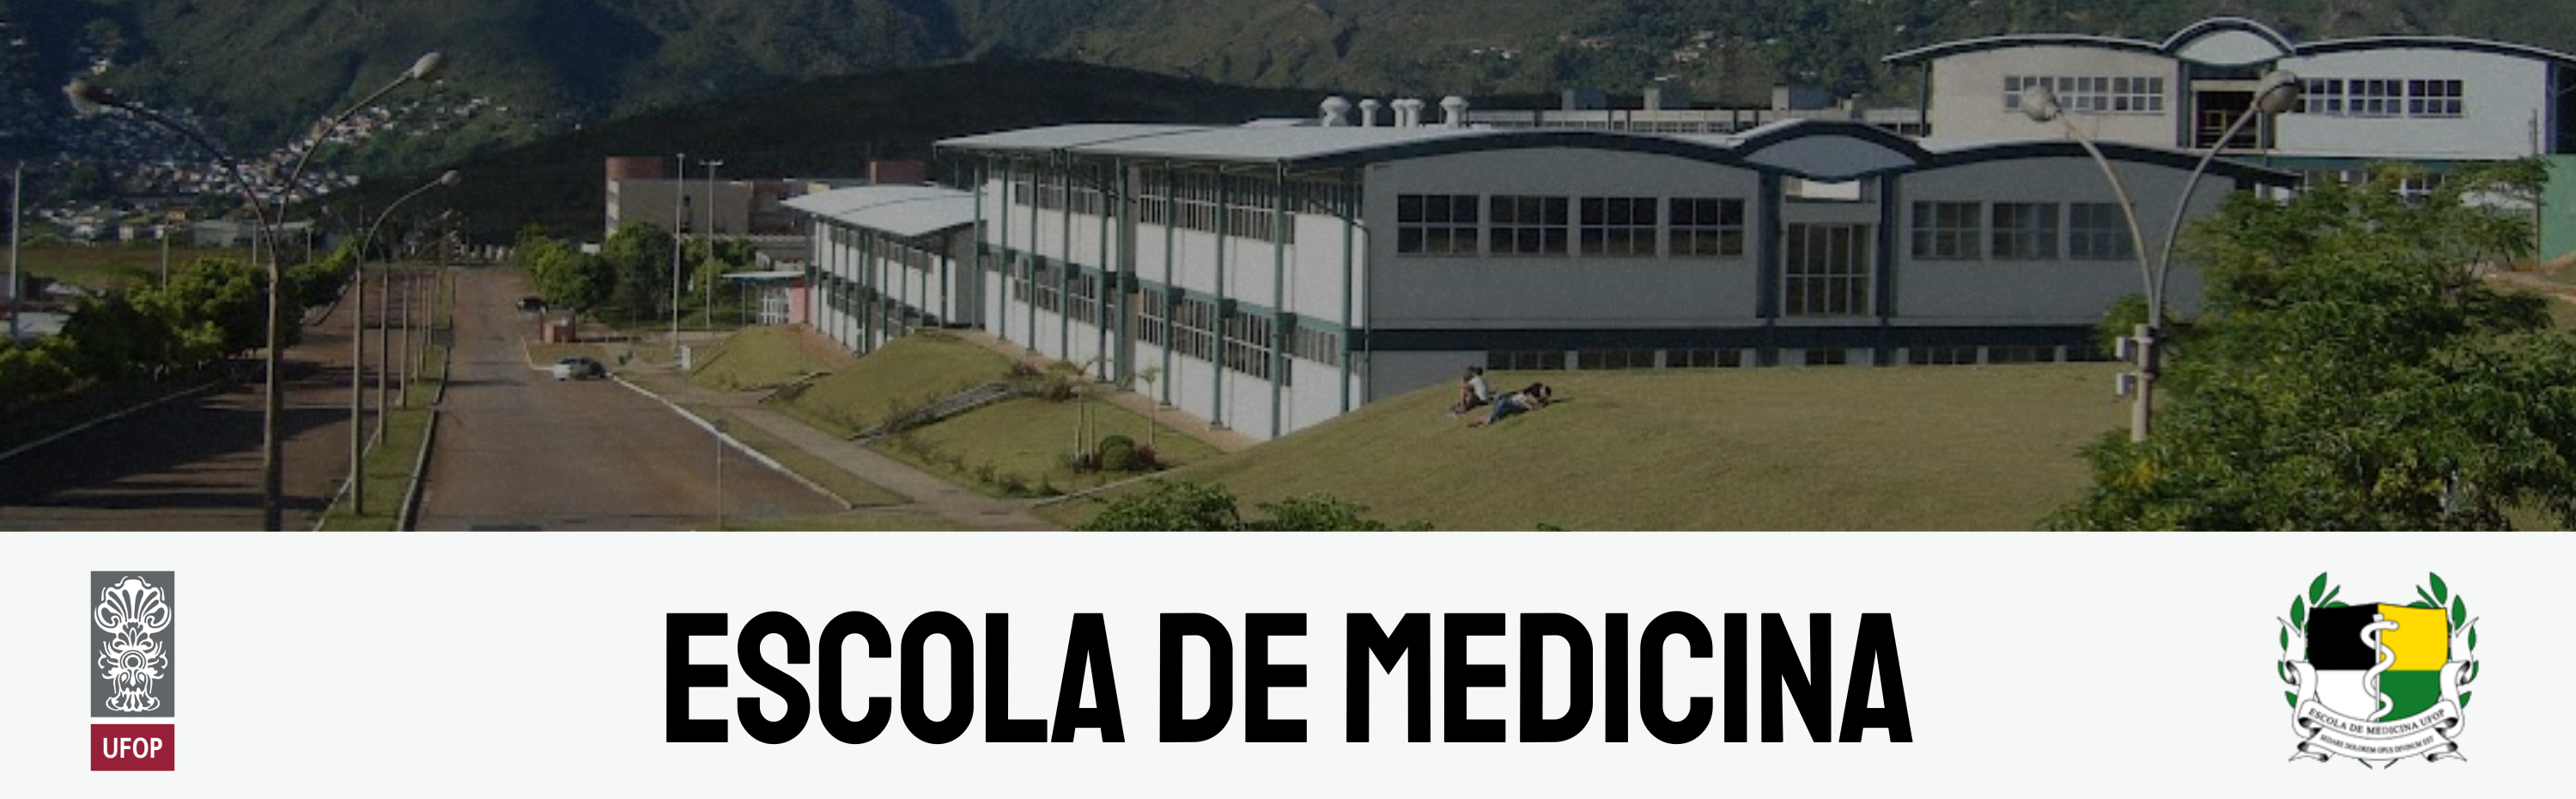 Escola de Medicina